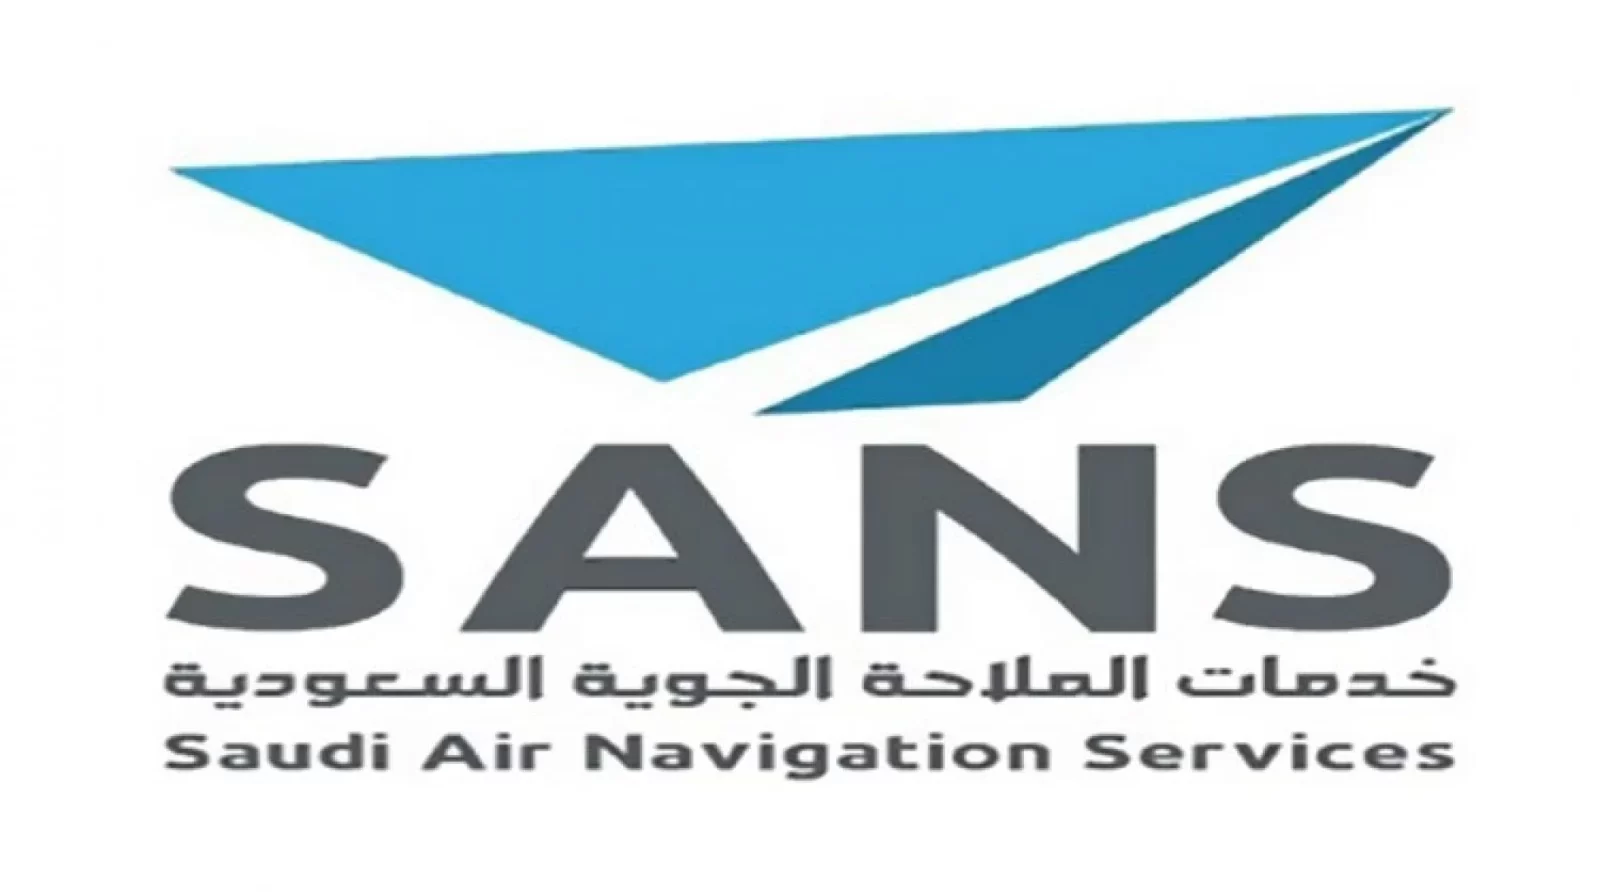 شركة خدمات الملاحة الجوية السعودية تعلن فتح باب التوظيف لحملة الدبلوم فأعلى بأبها وجدة - وظائف شركة خدمات الملاحة الجوية السعودية تعلن فتح باب التوظيف لحملة الدبلوم فأعلى بأبها وجدة